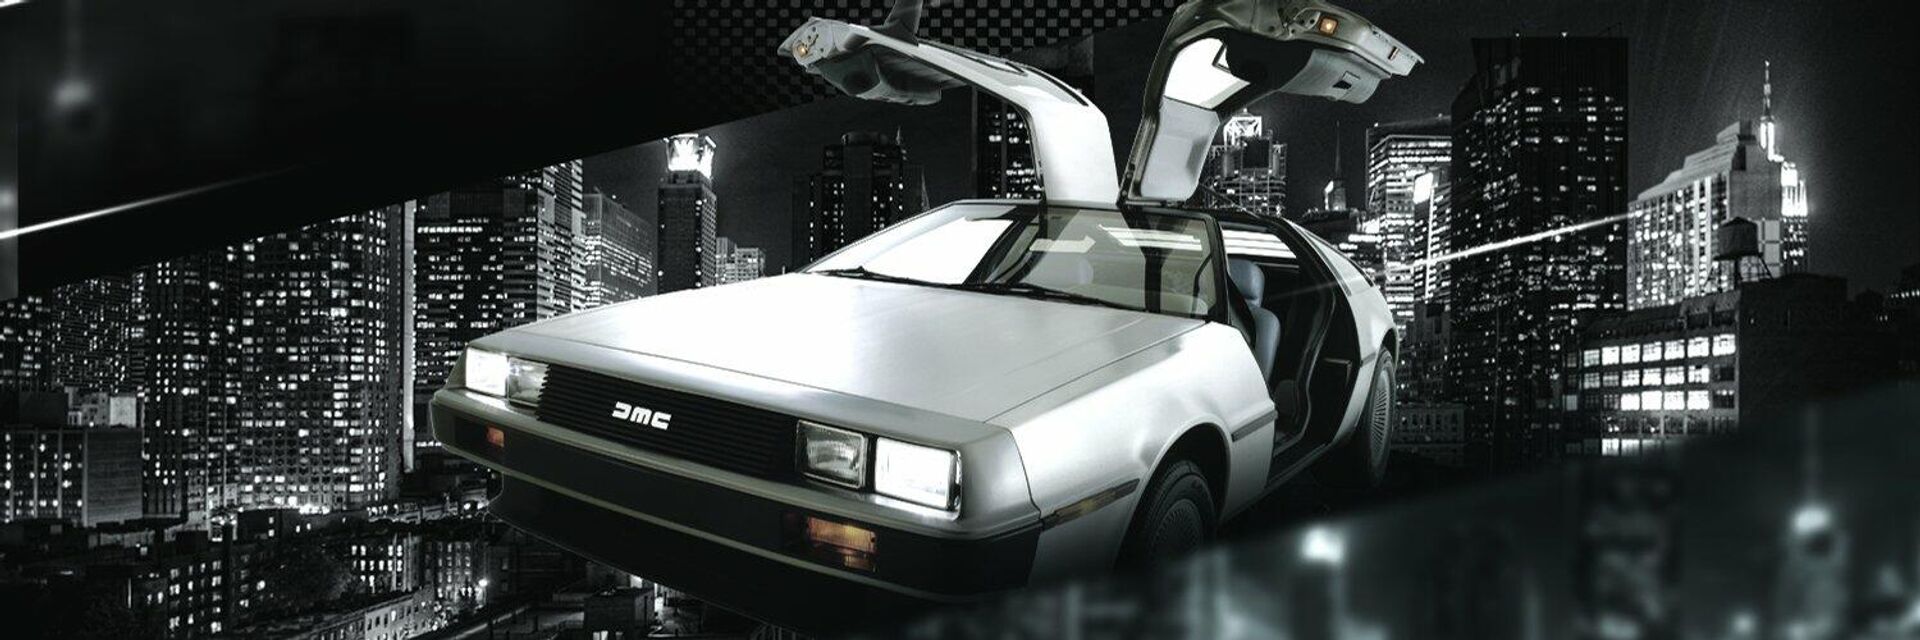 DeLorean, el icónico automóvil deportivo de la década de 1980 - Sputnik Mundo, 1920, 15.02.2022